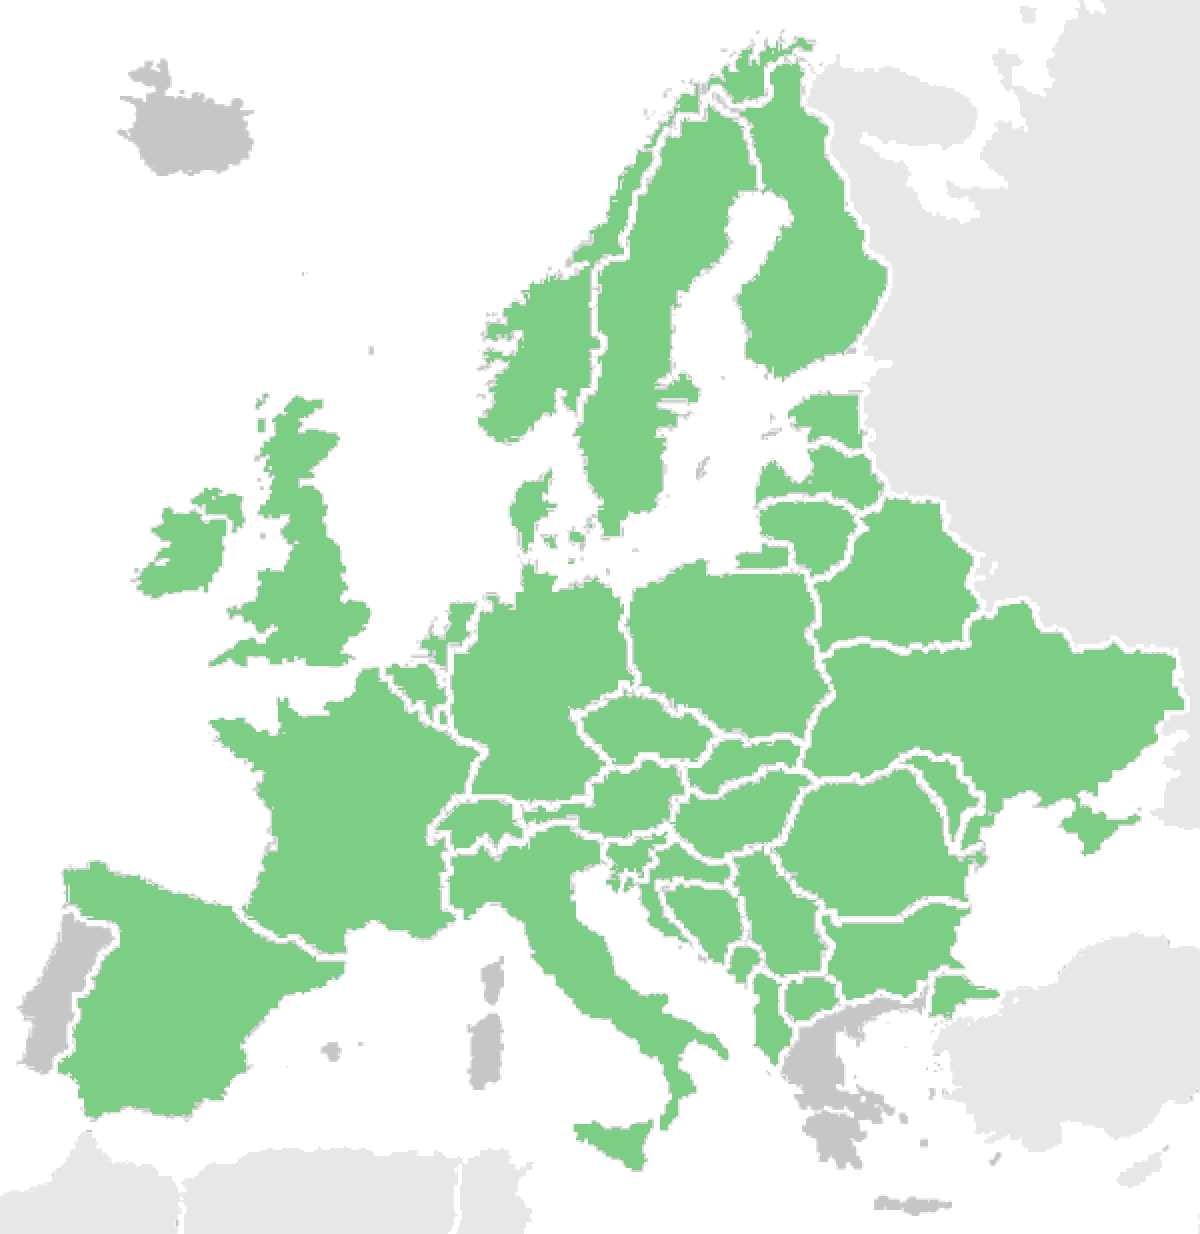 Horseradish in Europe